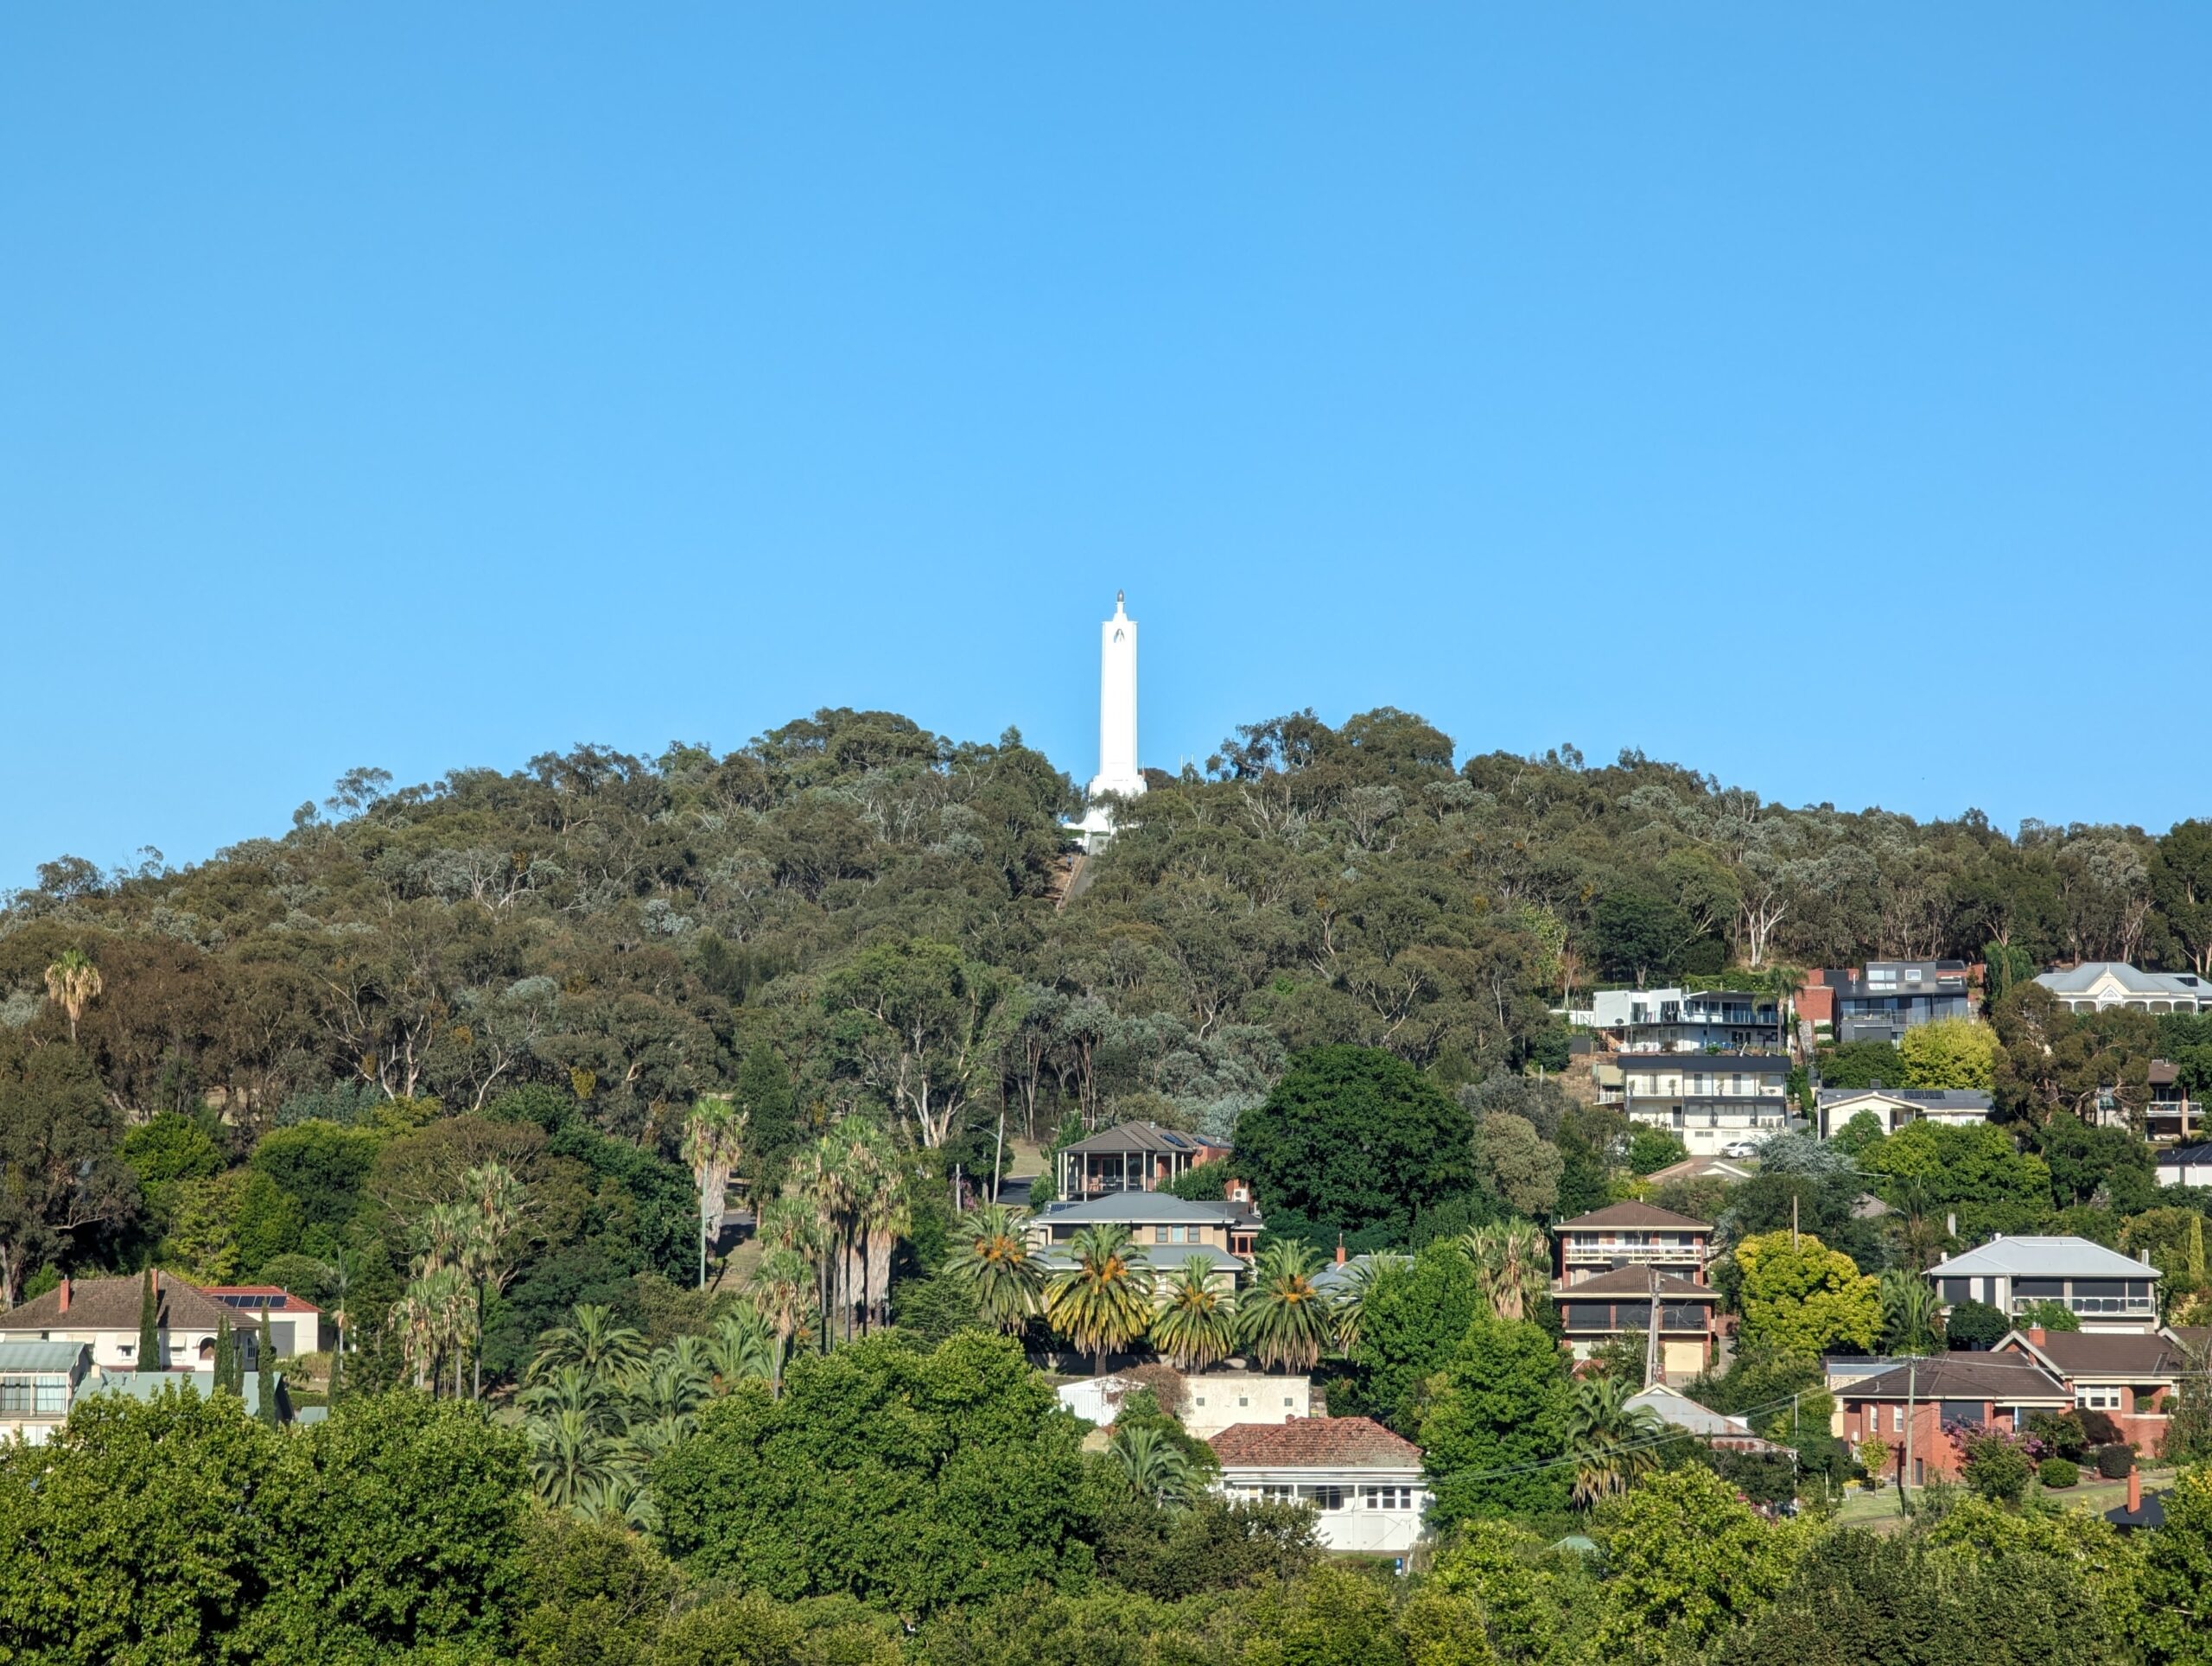 Albury War Memorial tower